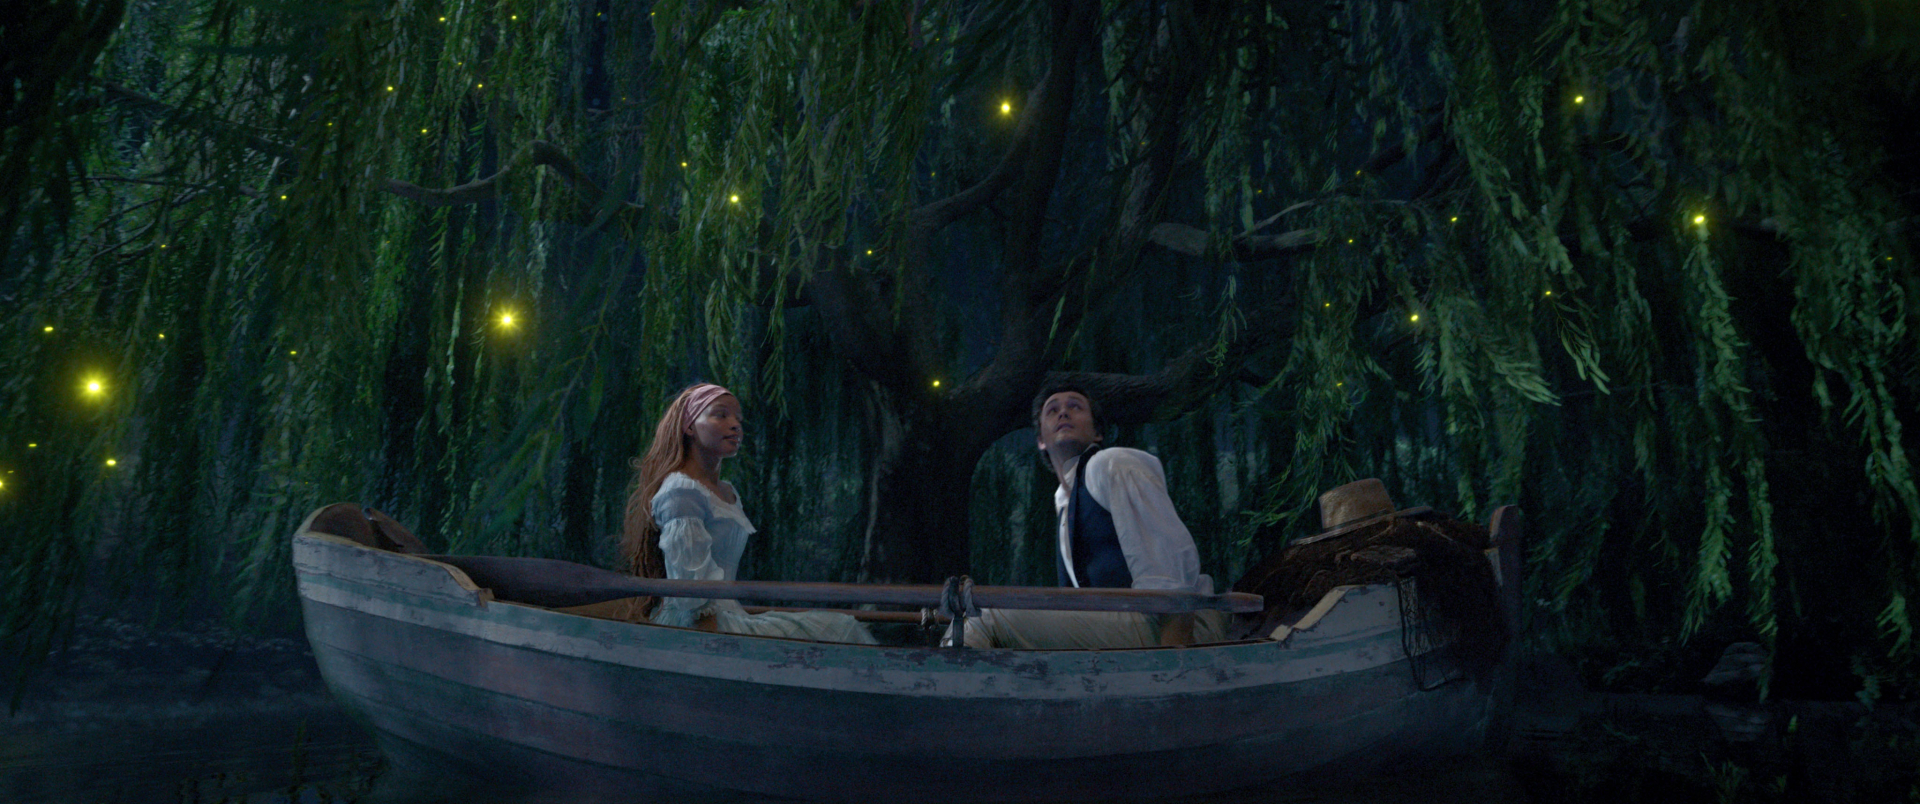 Bom tấn 'The Little Mermaid' tung trailer ngay lễ Oscar 2023: Ariel giải cứu trai đẹp, ai ngờ 'sập bẫy' phản diện - ảnh 1